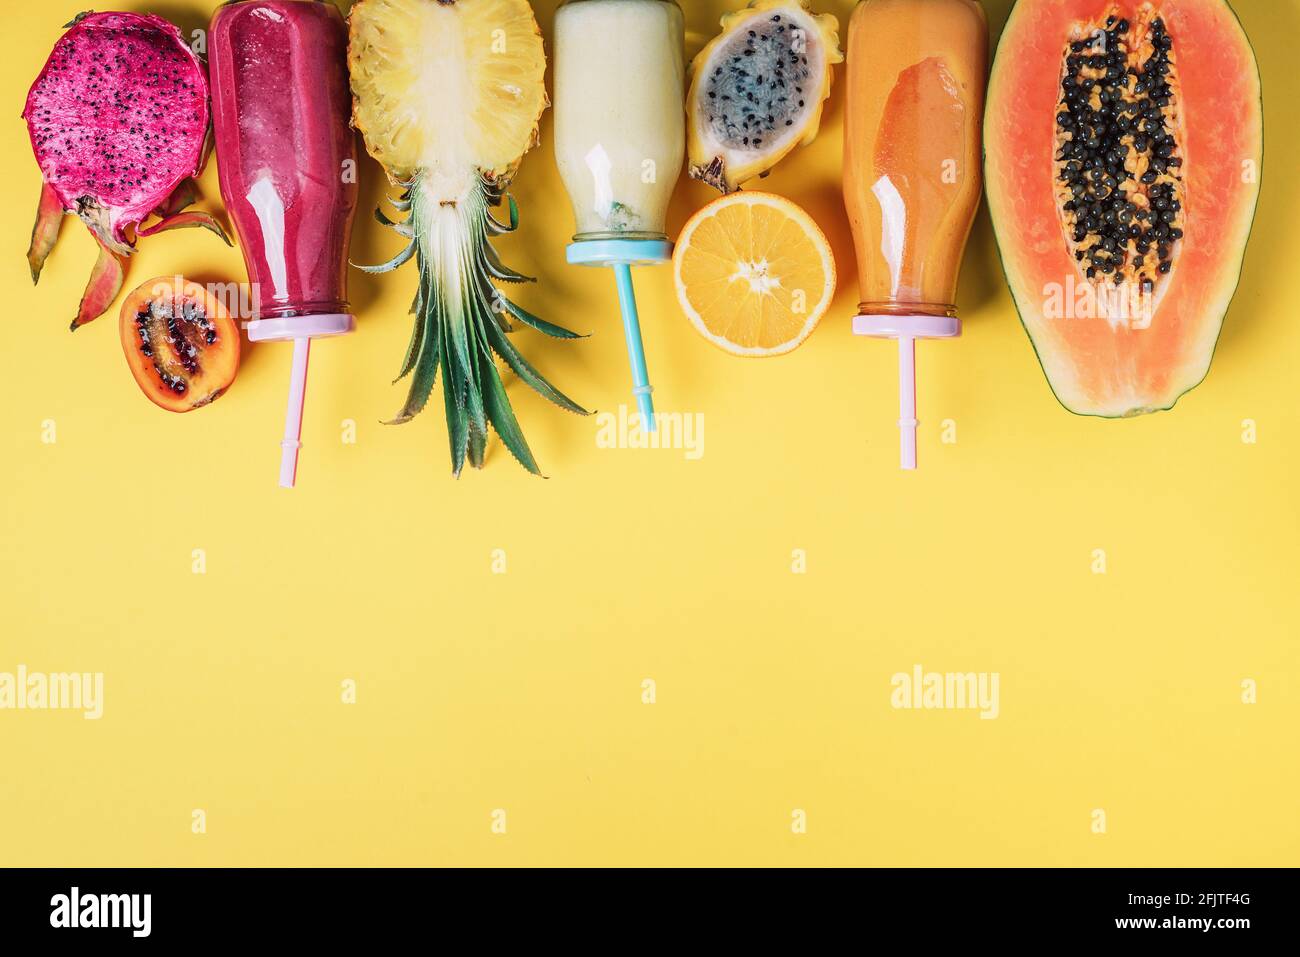 Smoothie frais et fruits juteux - papaye, orange, ananas, fruit dragon,  pitahaya, fruit tamarillo sur fond jaune. Boisson d'été Detox. Végétalien  Photo Stock - Alamy